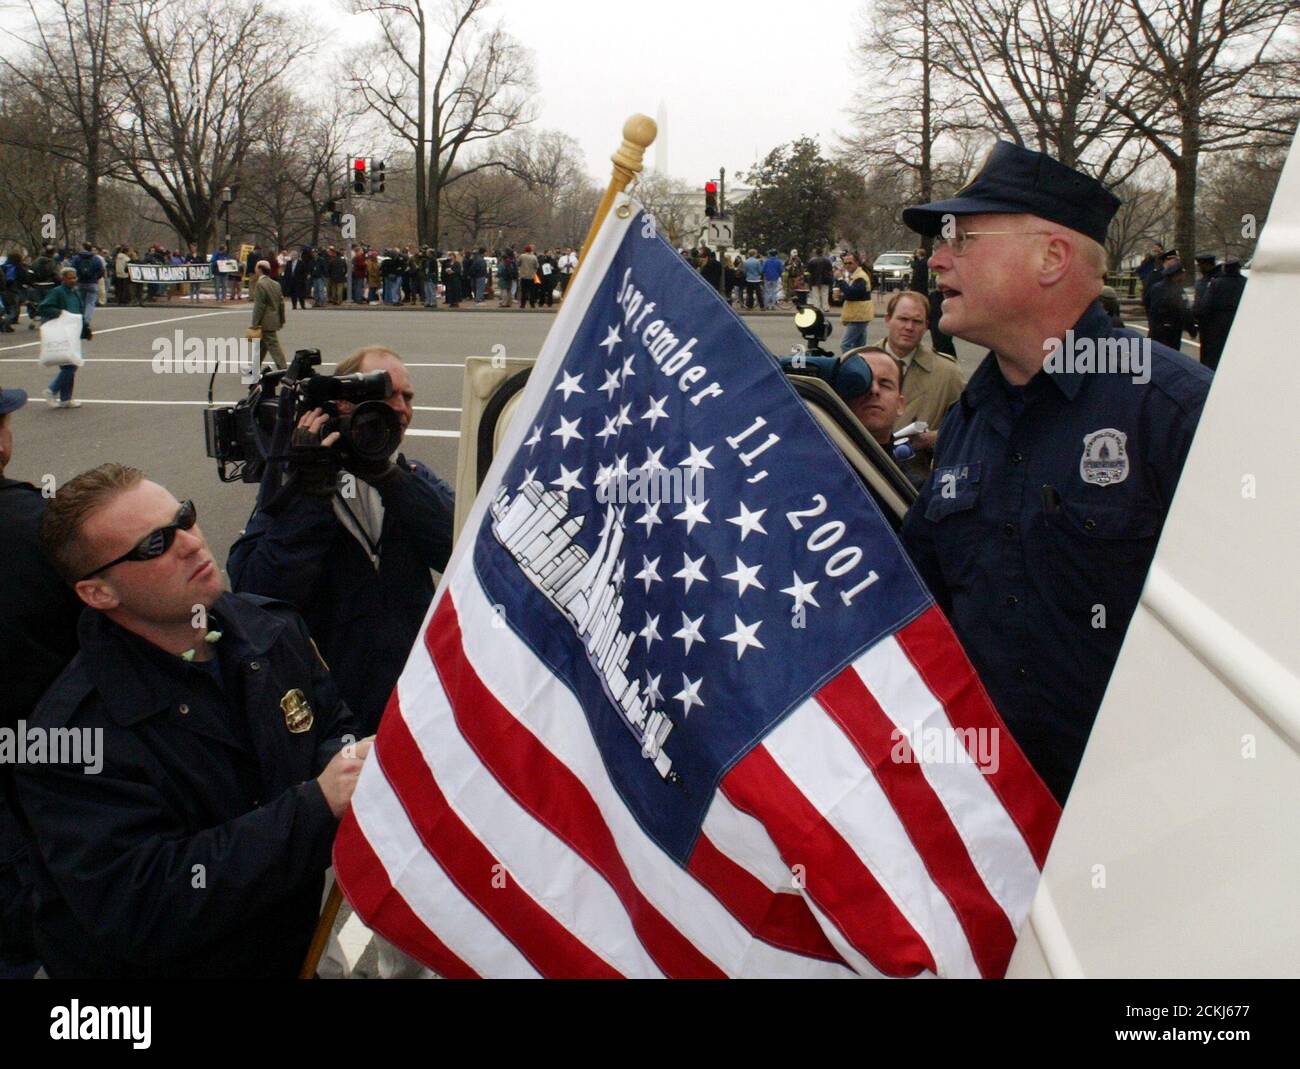 Les policiers métropolitains Mark Lewis (L) et James Lugaila (R) ont mis un drapeau des États-Unis orné d'une photo des tours du World Trade Center et du « 11 septembre 2001 » au sommet de leur camion de police lorsqu'ils arrivent pour patrouiller une manifestation anti-guerre près de la Maison Blanche (arrière) à Washington, le 21 mars. 2003. La police a procédé à plusieurs dizaines d'arrestations alors que des manifestants perturbaient la circulation à Washington, tandis que d'importantes frappes aériennes américaines ont frappé le centre-ville de Bagdad en Irak. REUTERS/Jim Bourg JRB/HK Banque D'Images